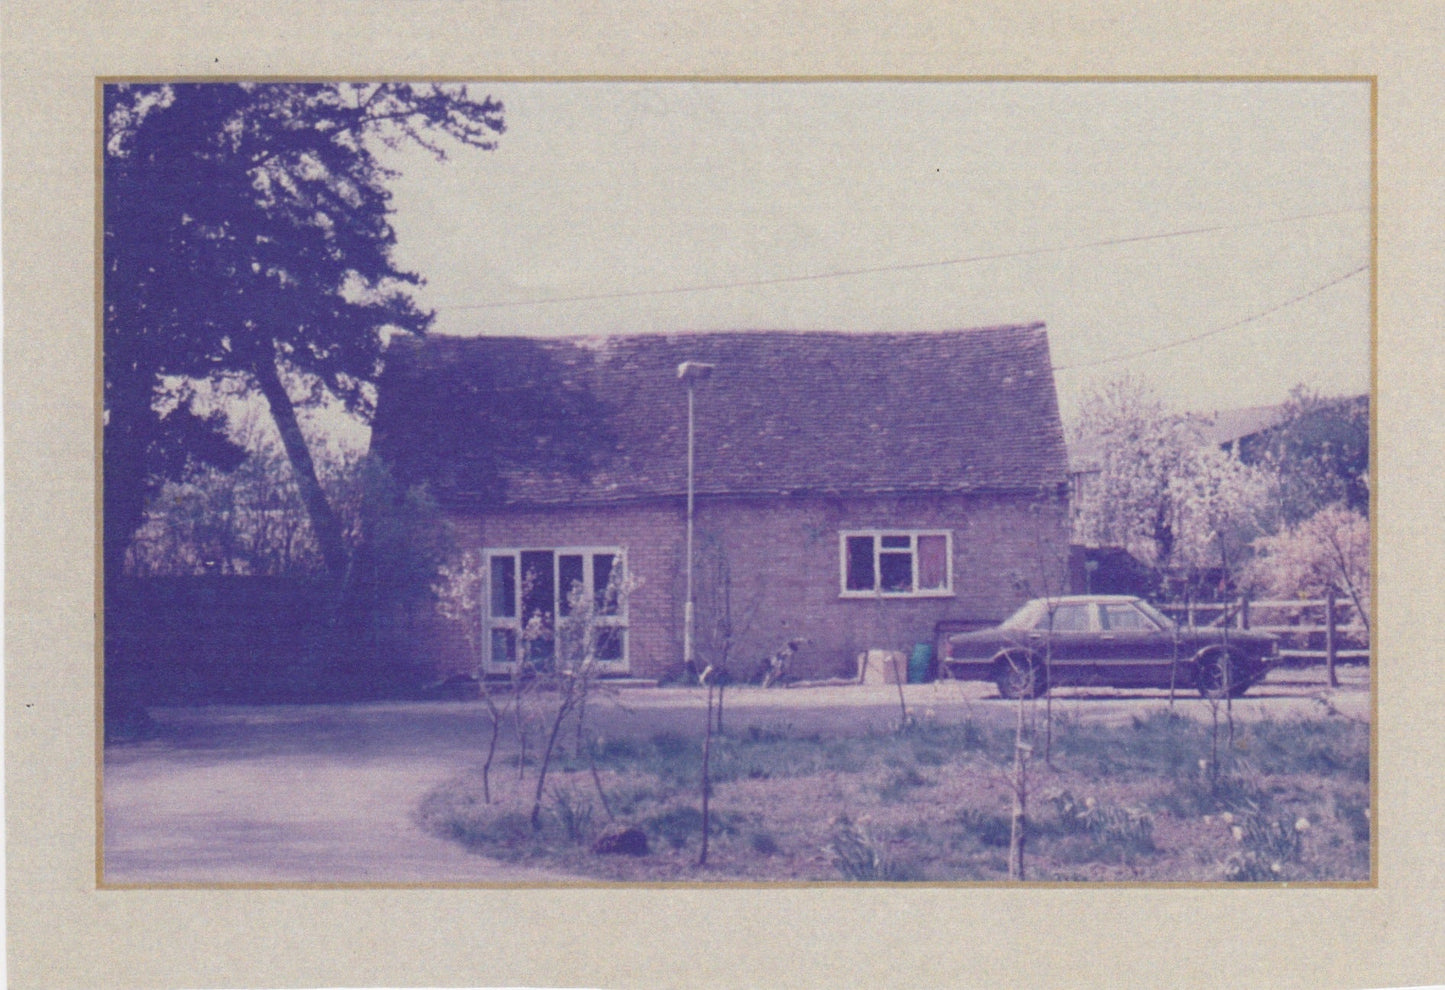 1982 We move to Simpson, Milton Keynes.